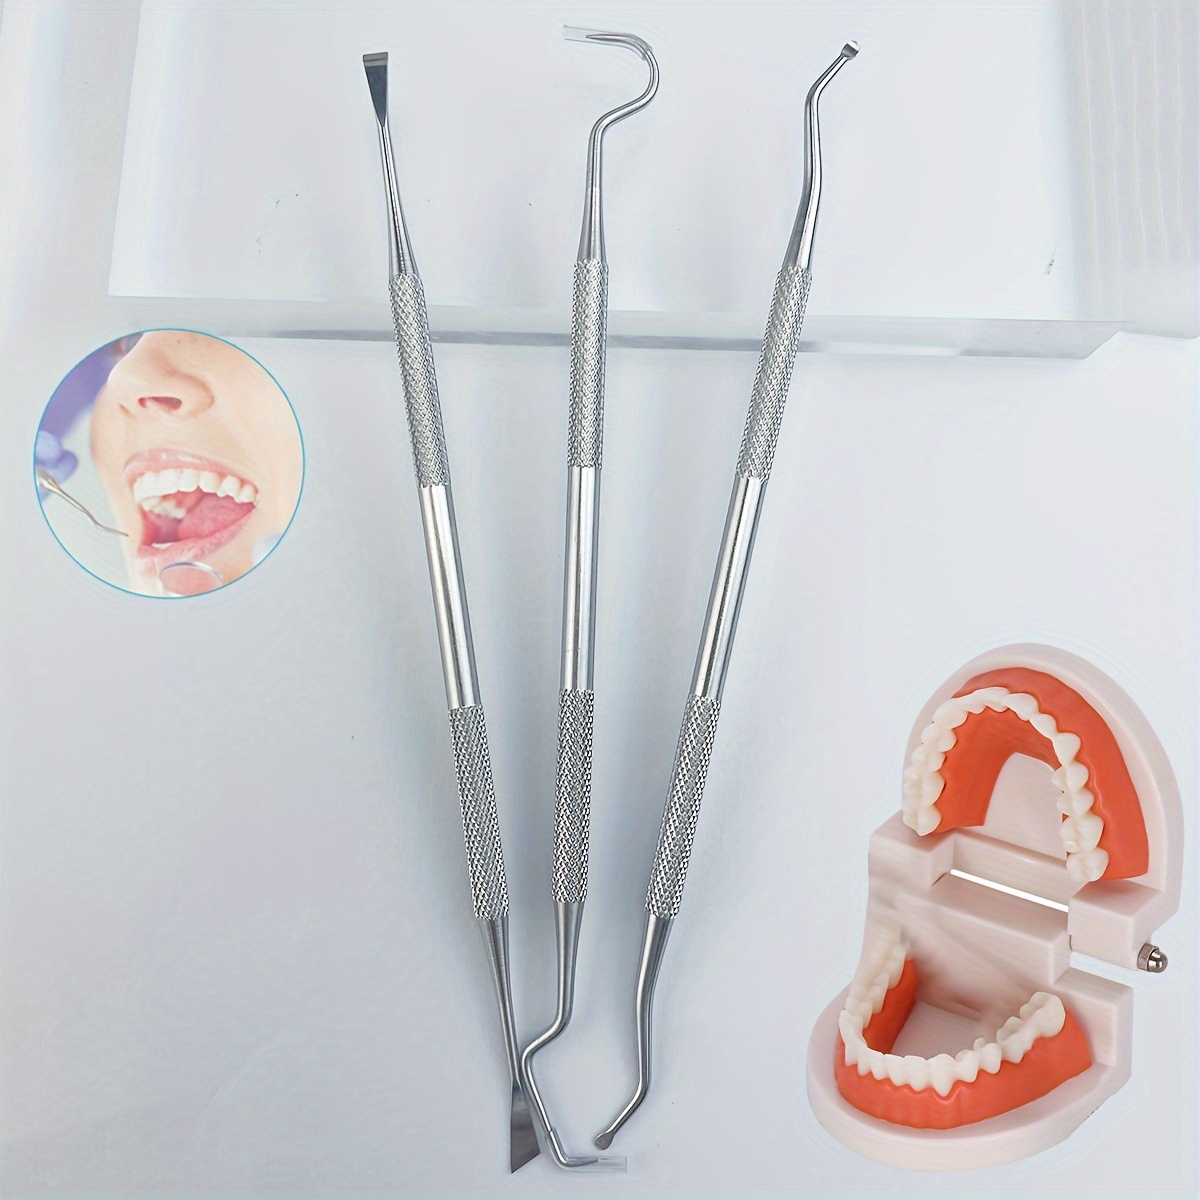 7 Teile / satz Zahnmedizin-Werkzeug-Kit, Edelstahl-Sauberer  Zahnarztschaber, Dentalhacke-Zahnreiniger. Dental Tool Produkte Mundpflege